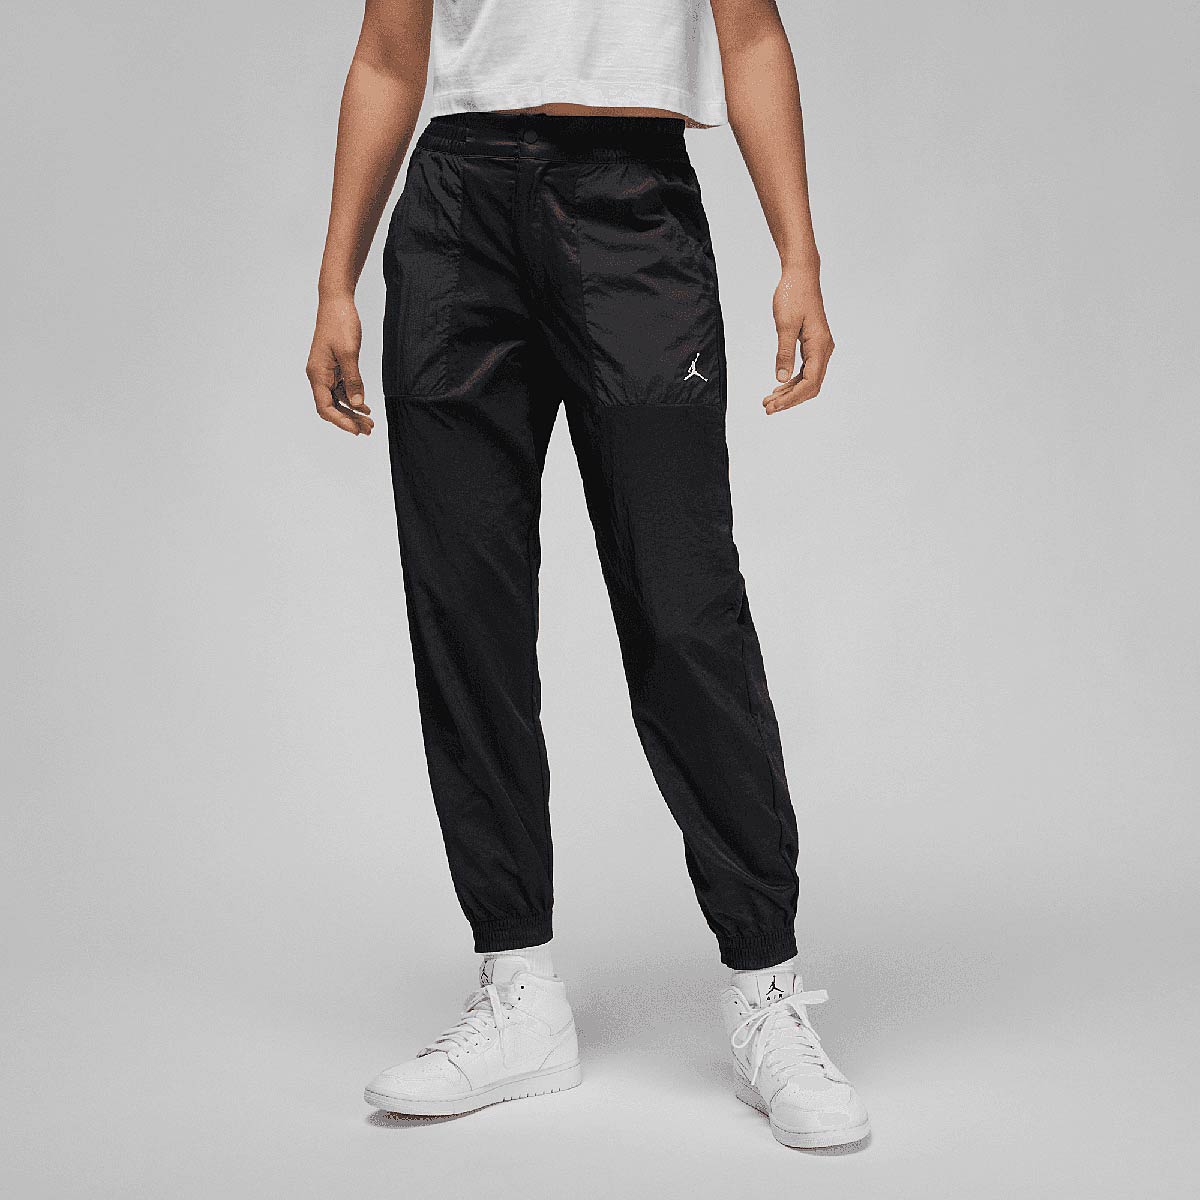 Jordan W J Woven Core Pants, Black/Black/White